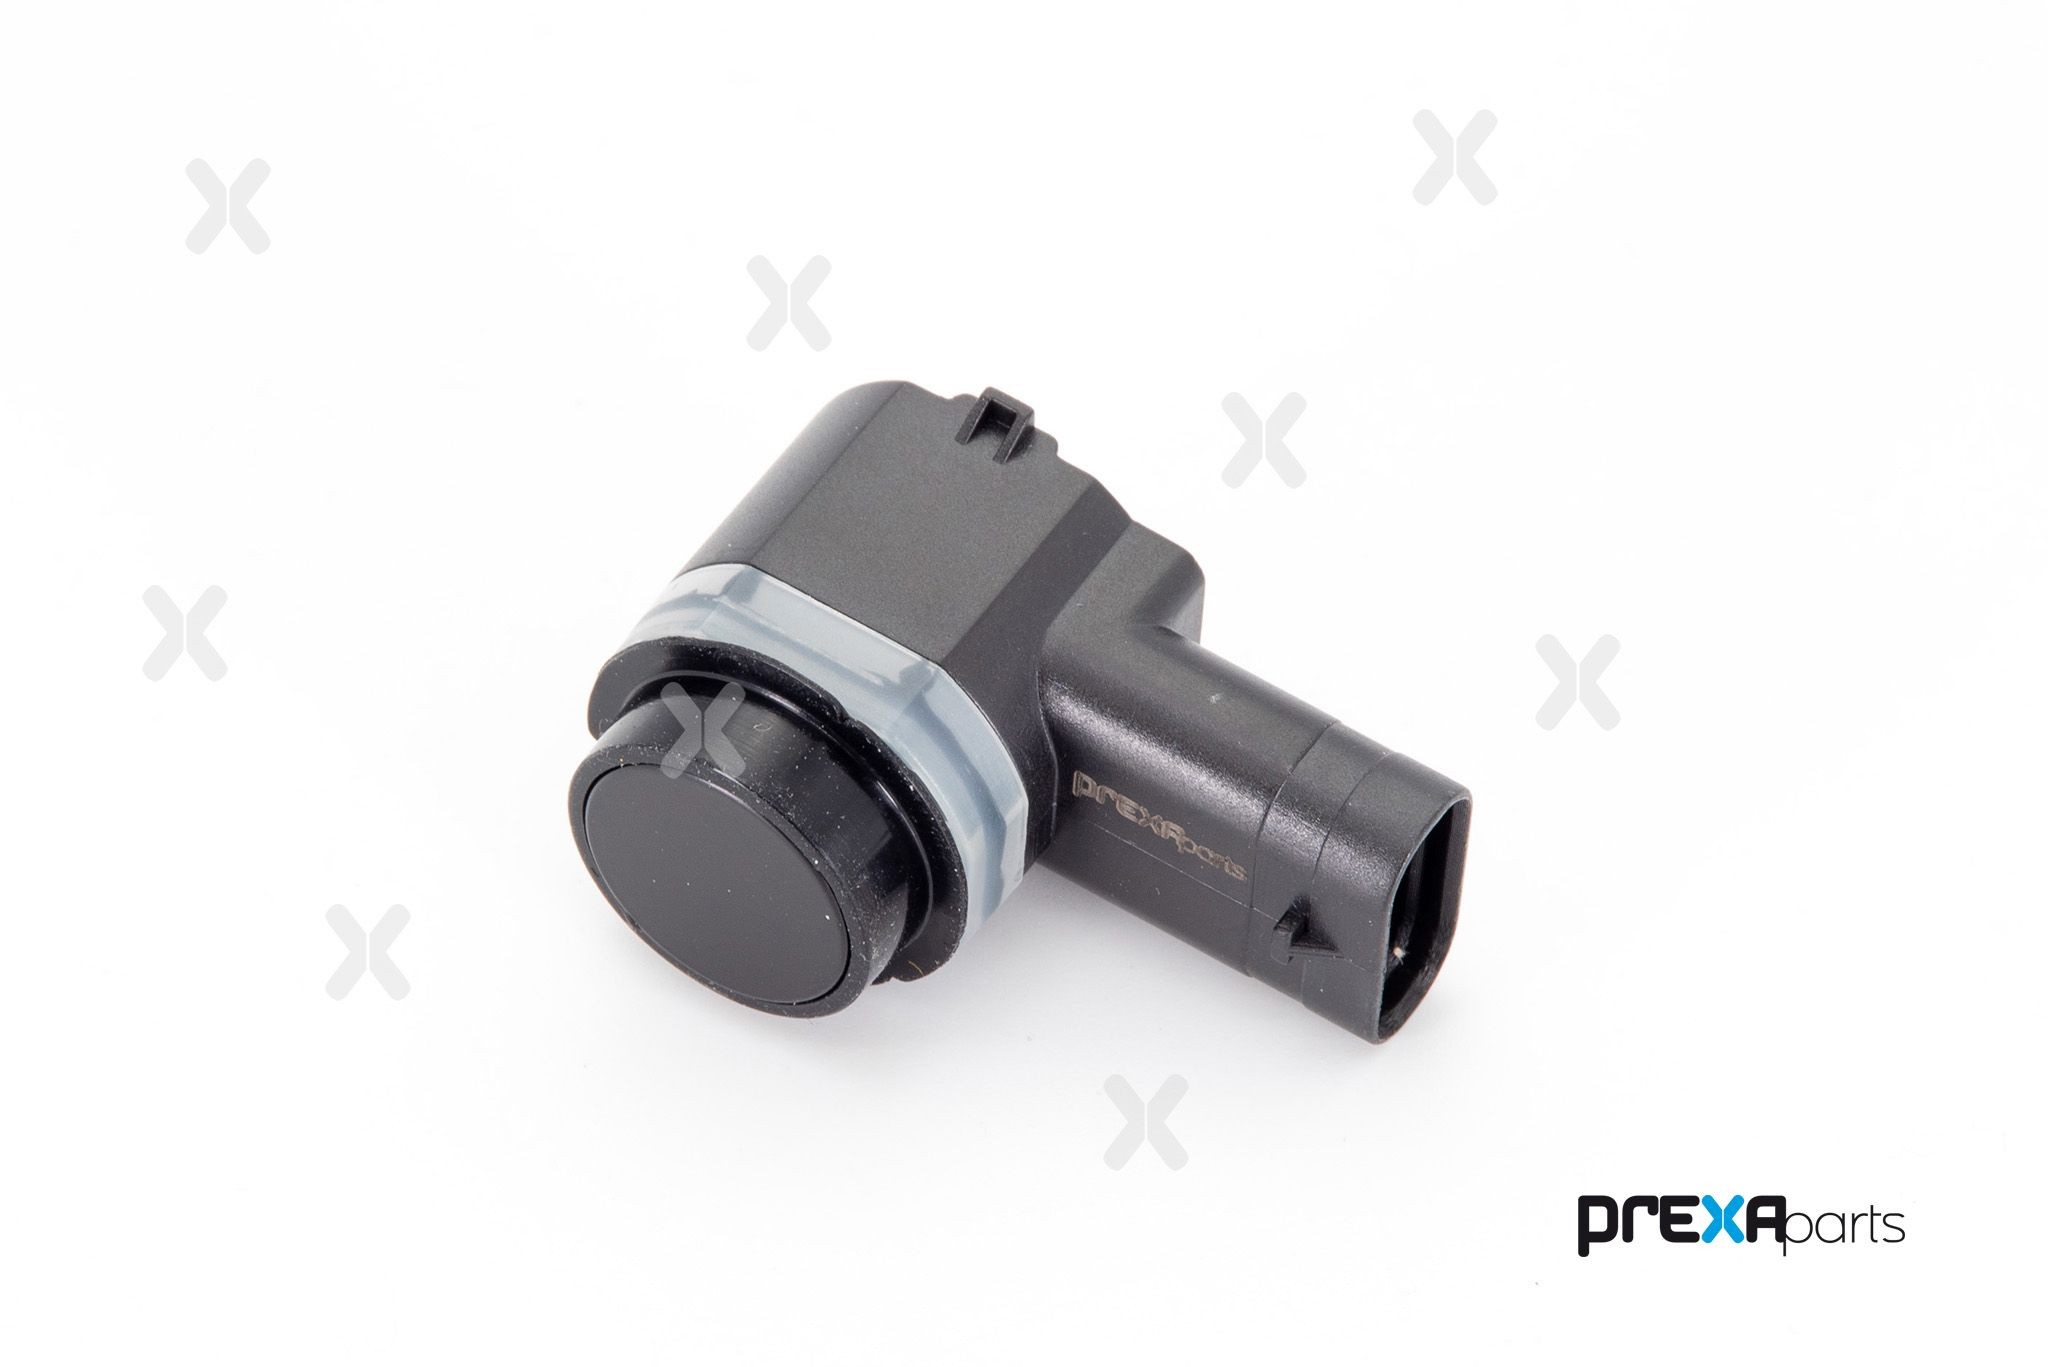 PREXAparts P703009 Parking sensor 50511602